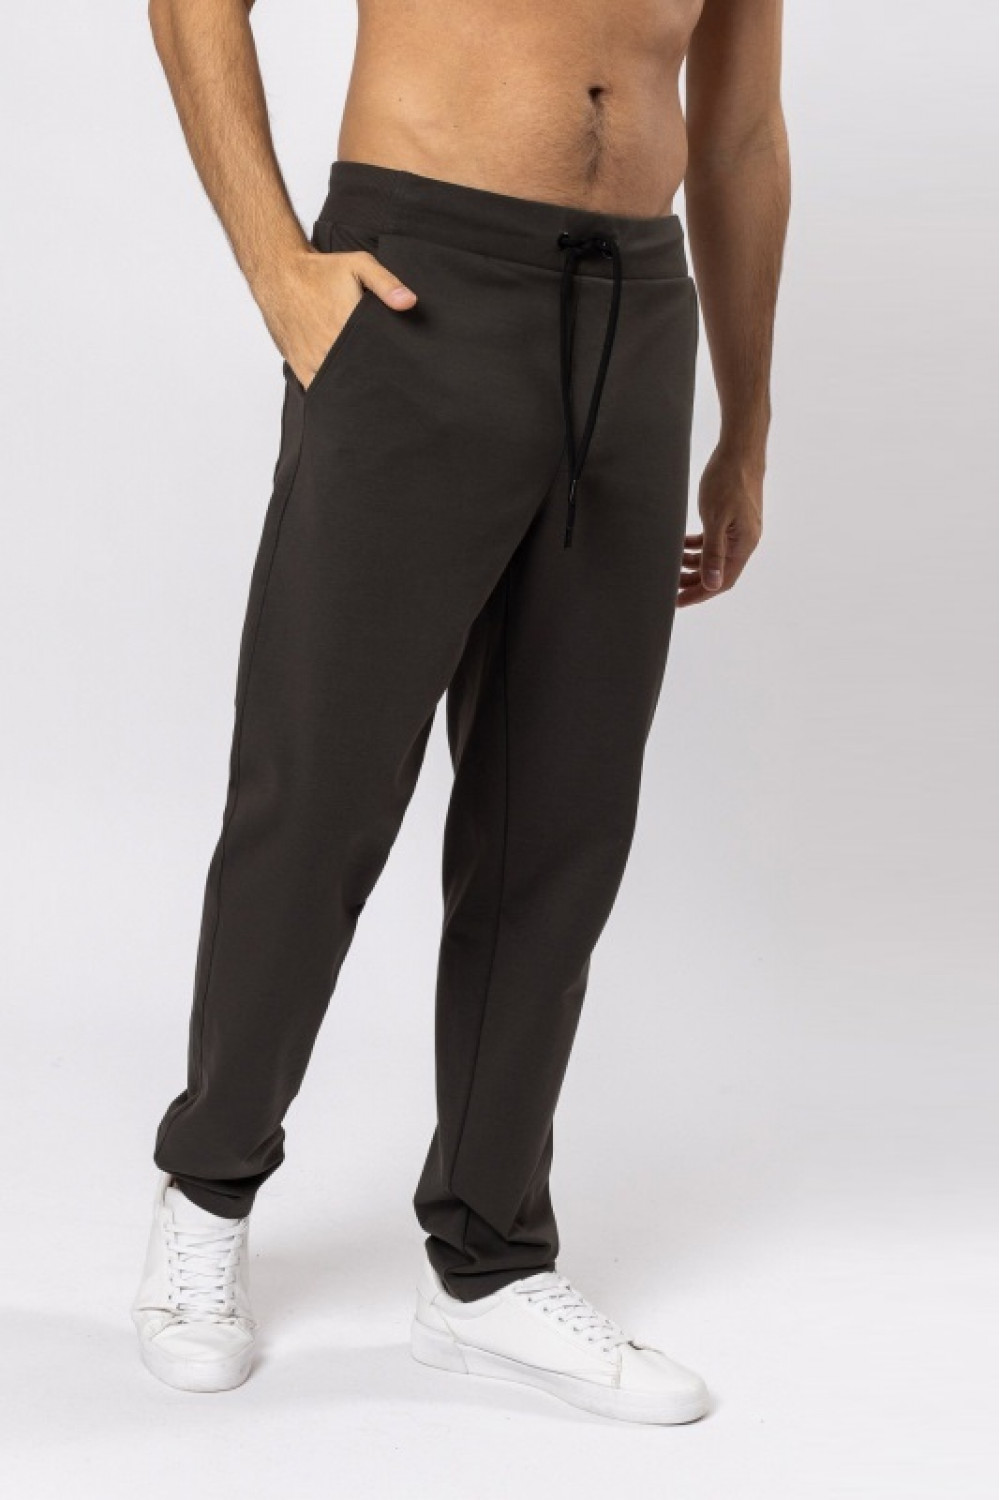 OXO-1112 Свободные брюки мужские. модель 2, коллекция  COMFY SPORT, OXO UNO